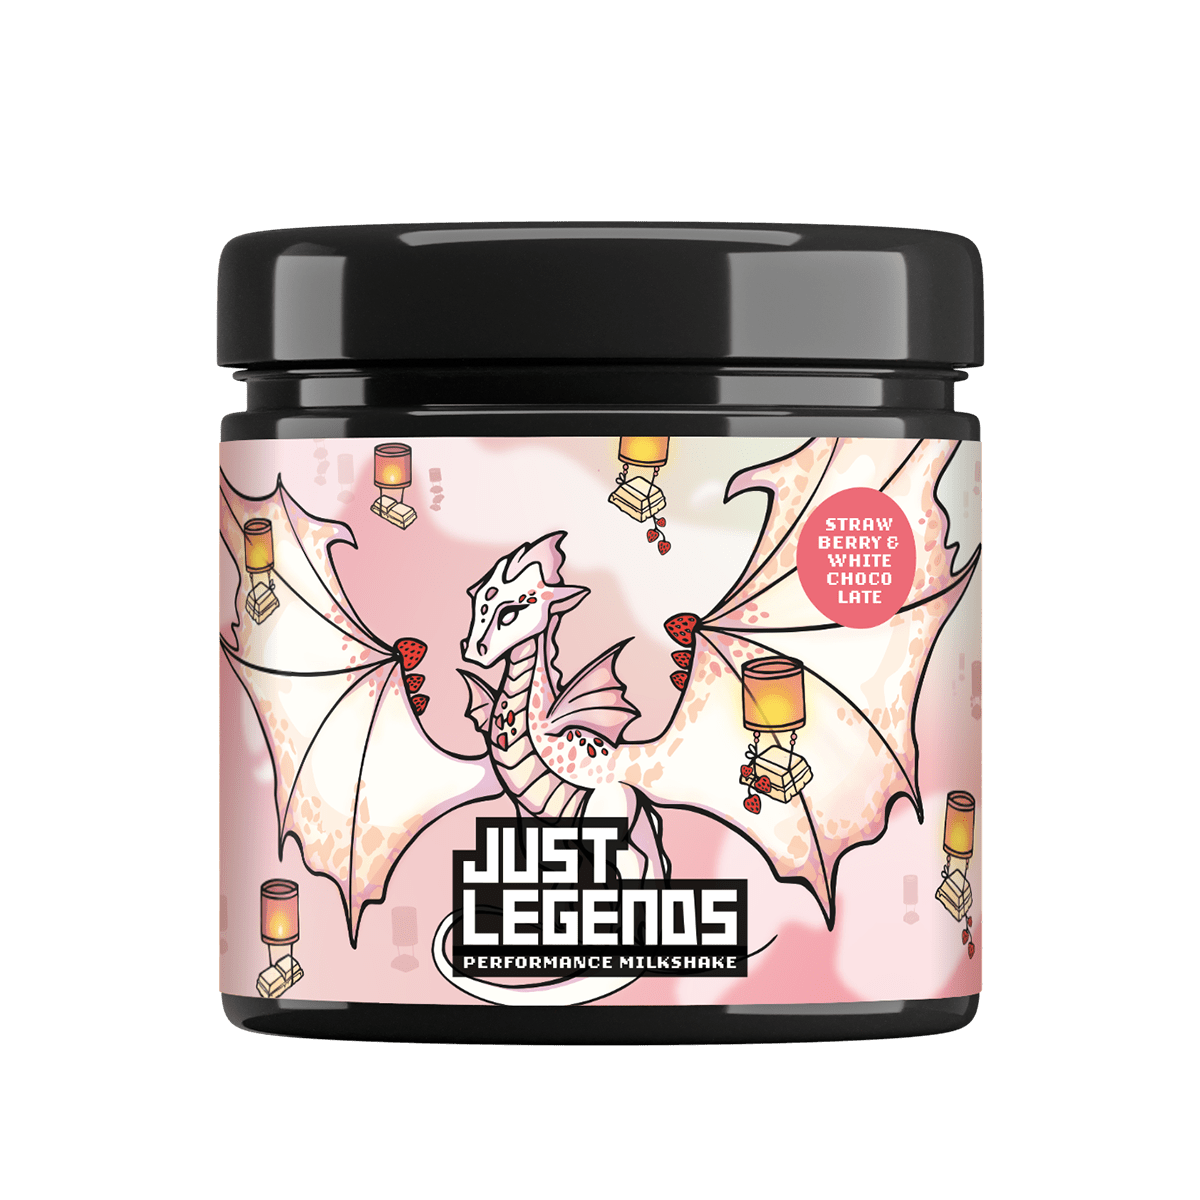 Just Legends Performance Milkshake | Funktionaler, veganer Cross Sell auf Pulverbasis ohne Zucker, mit wenig Kalorien, vielen Vitaminen und natürlichen Aromen.